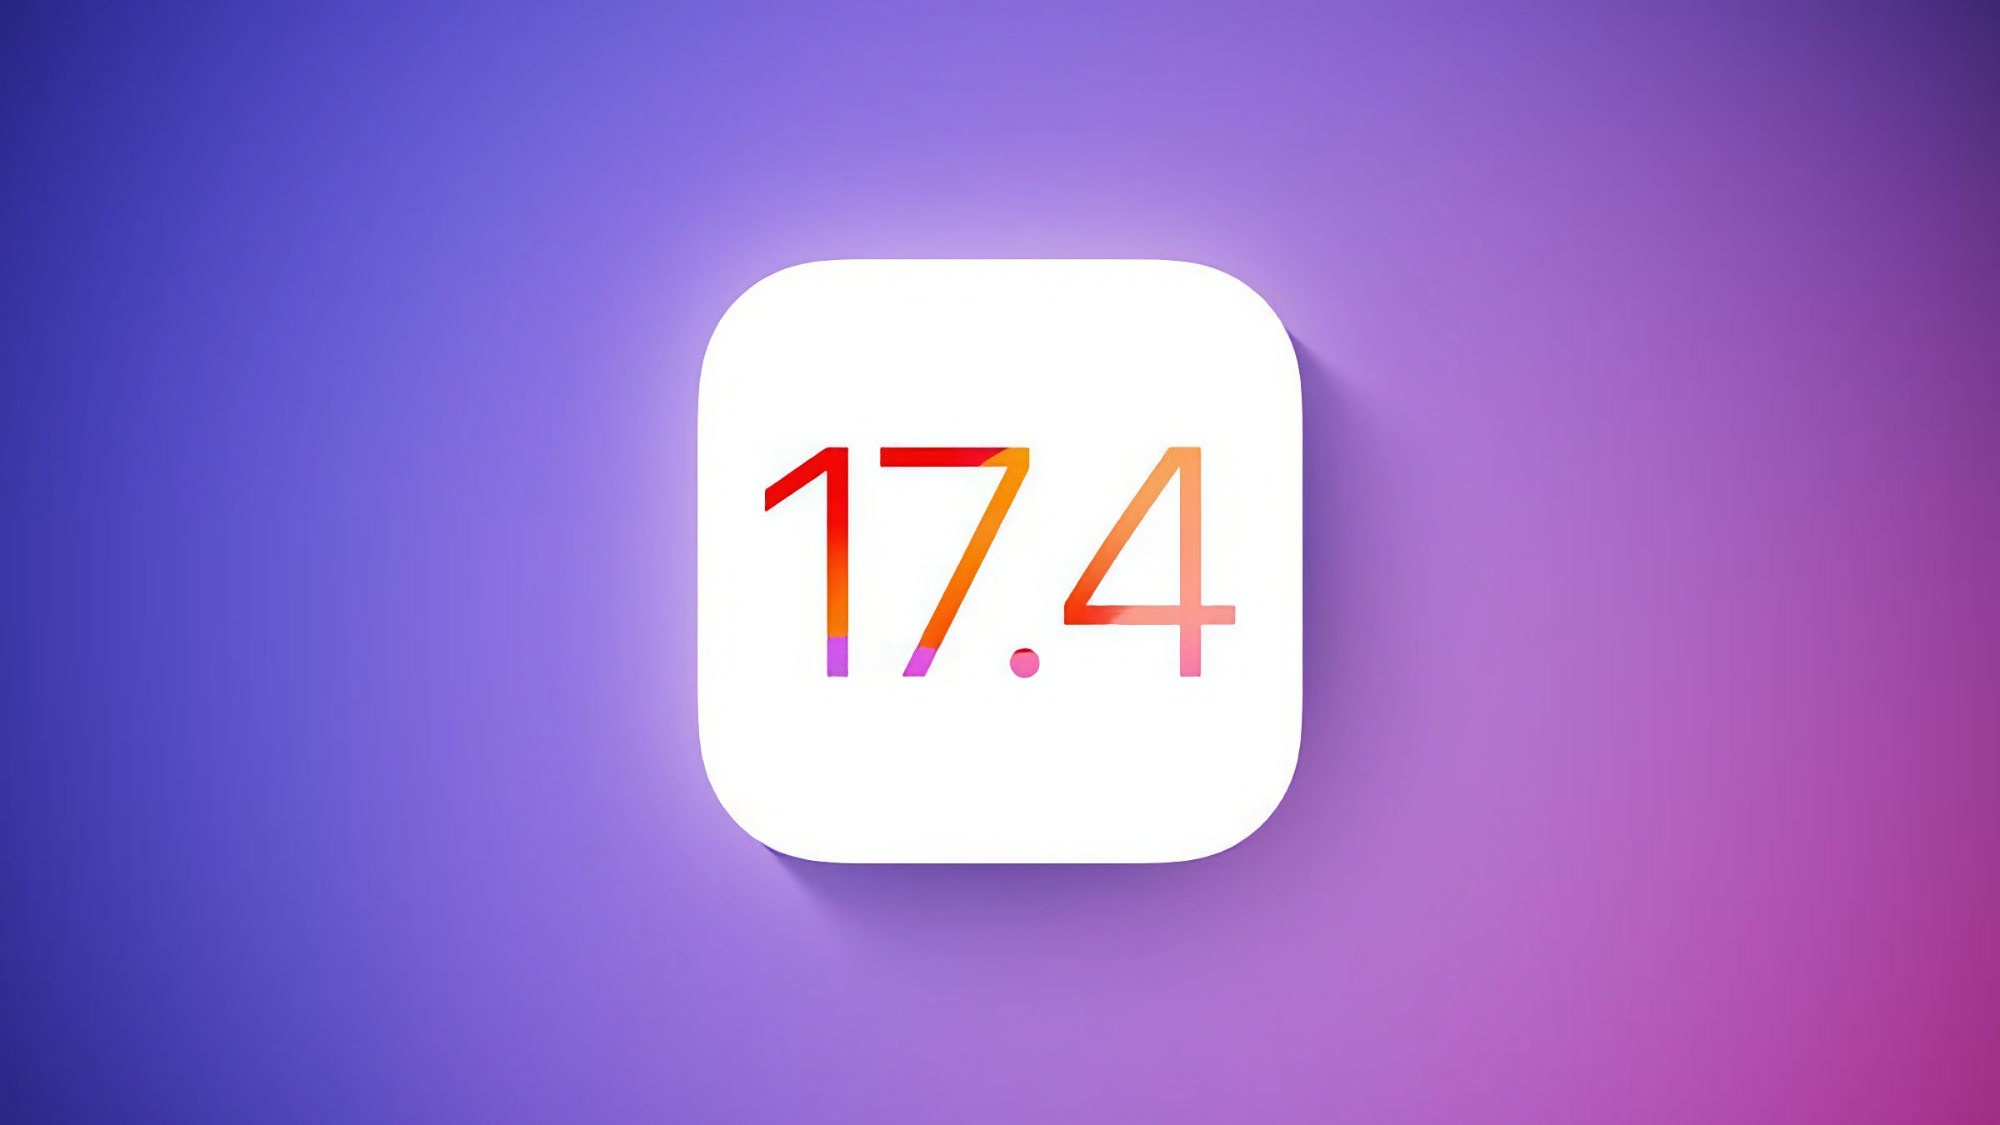 Apple annuncia iOS 17.4 beta: quali sono le novità?